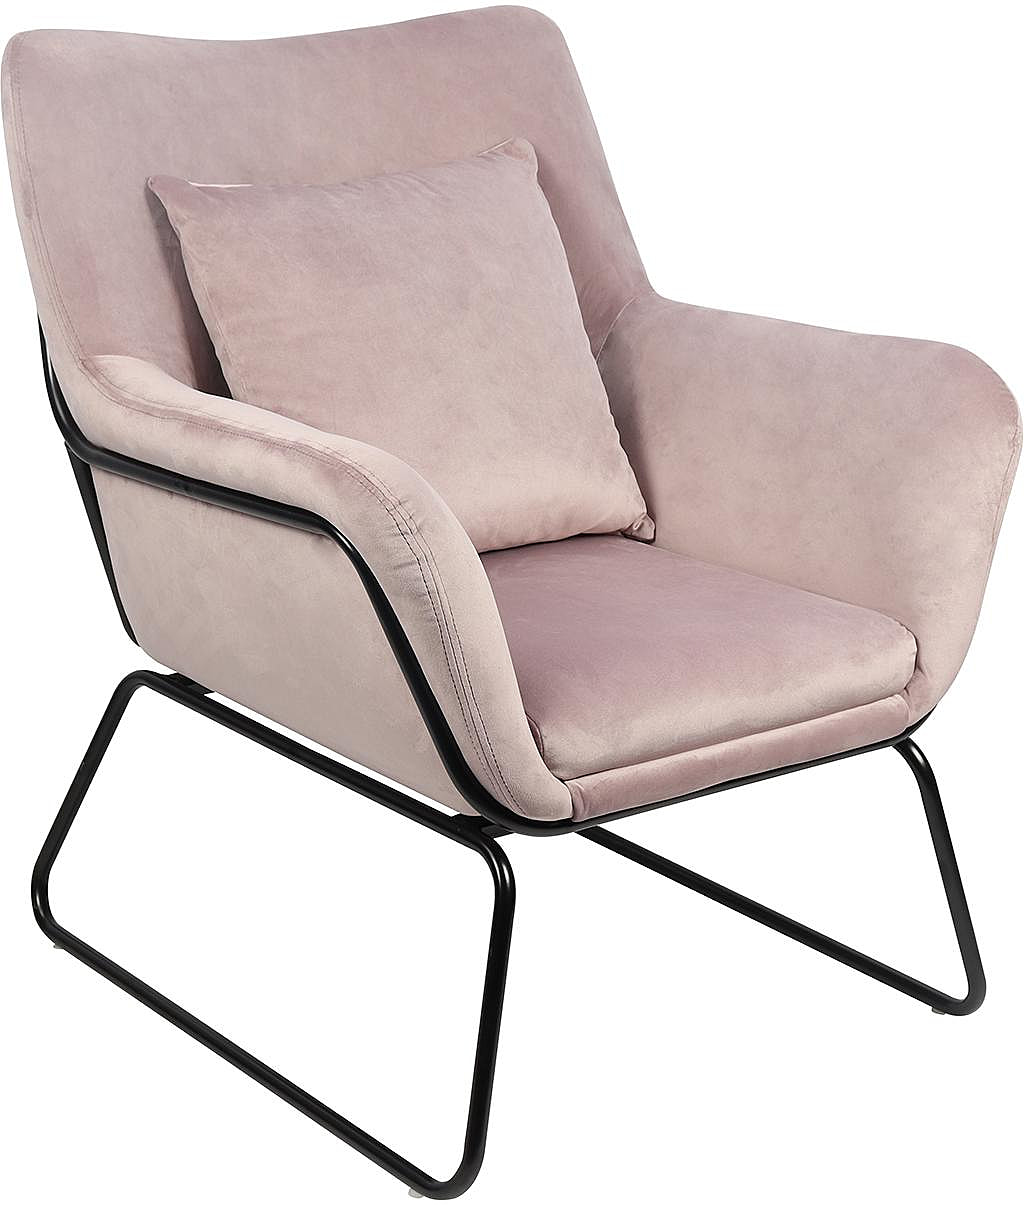 SalesFever Relaxsessel Sessel verschiedenen mit Samtbezug in Farben